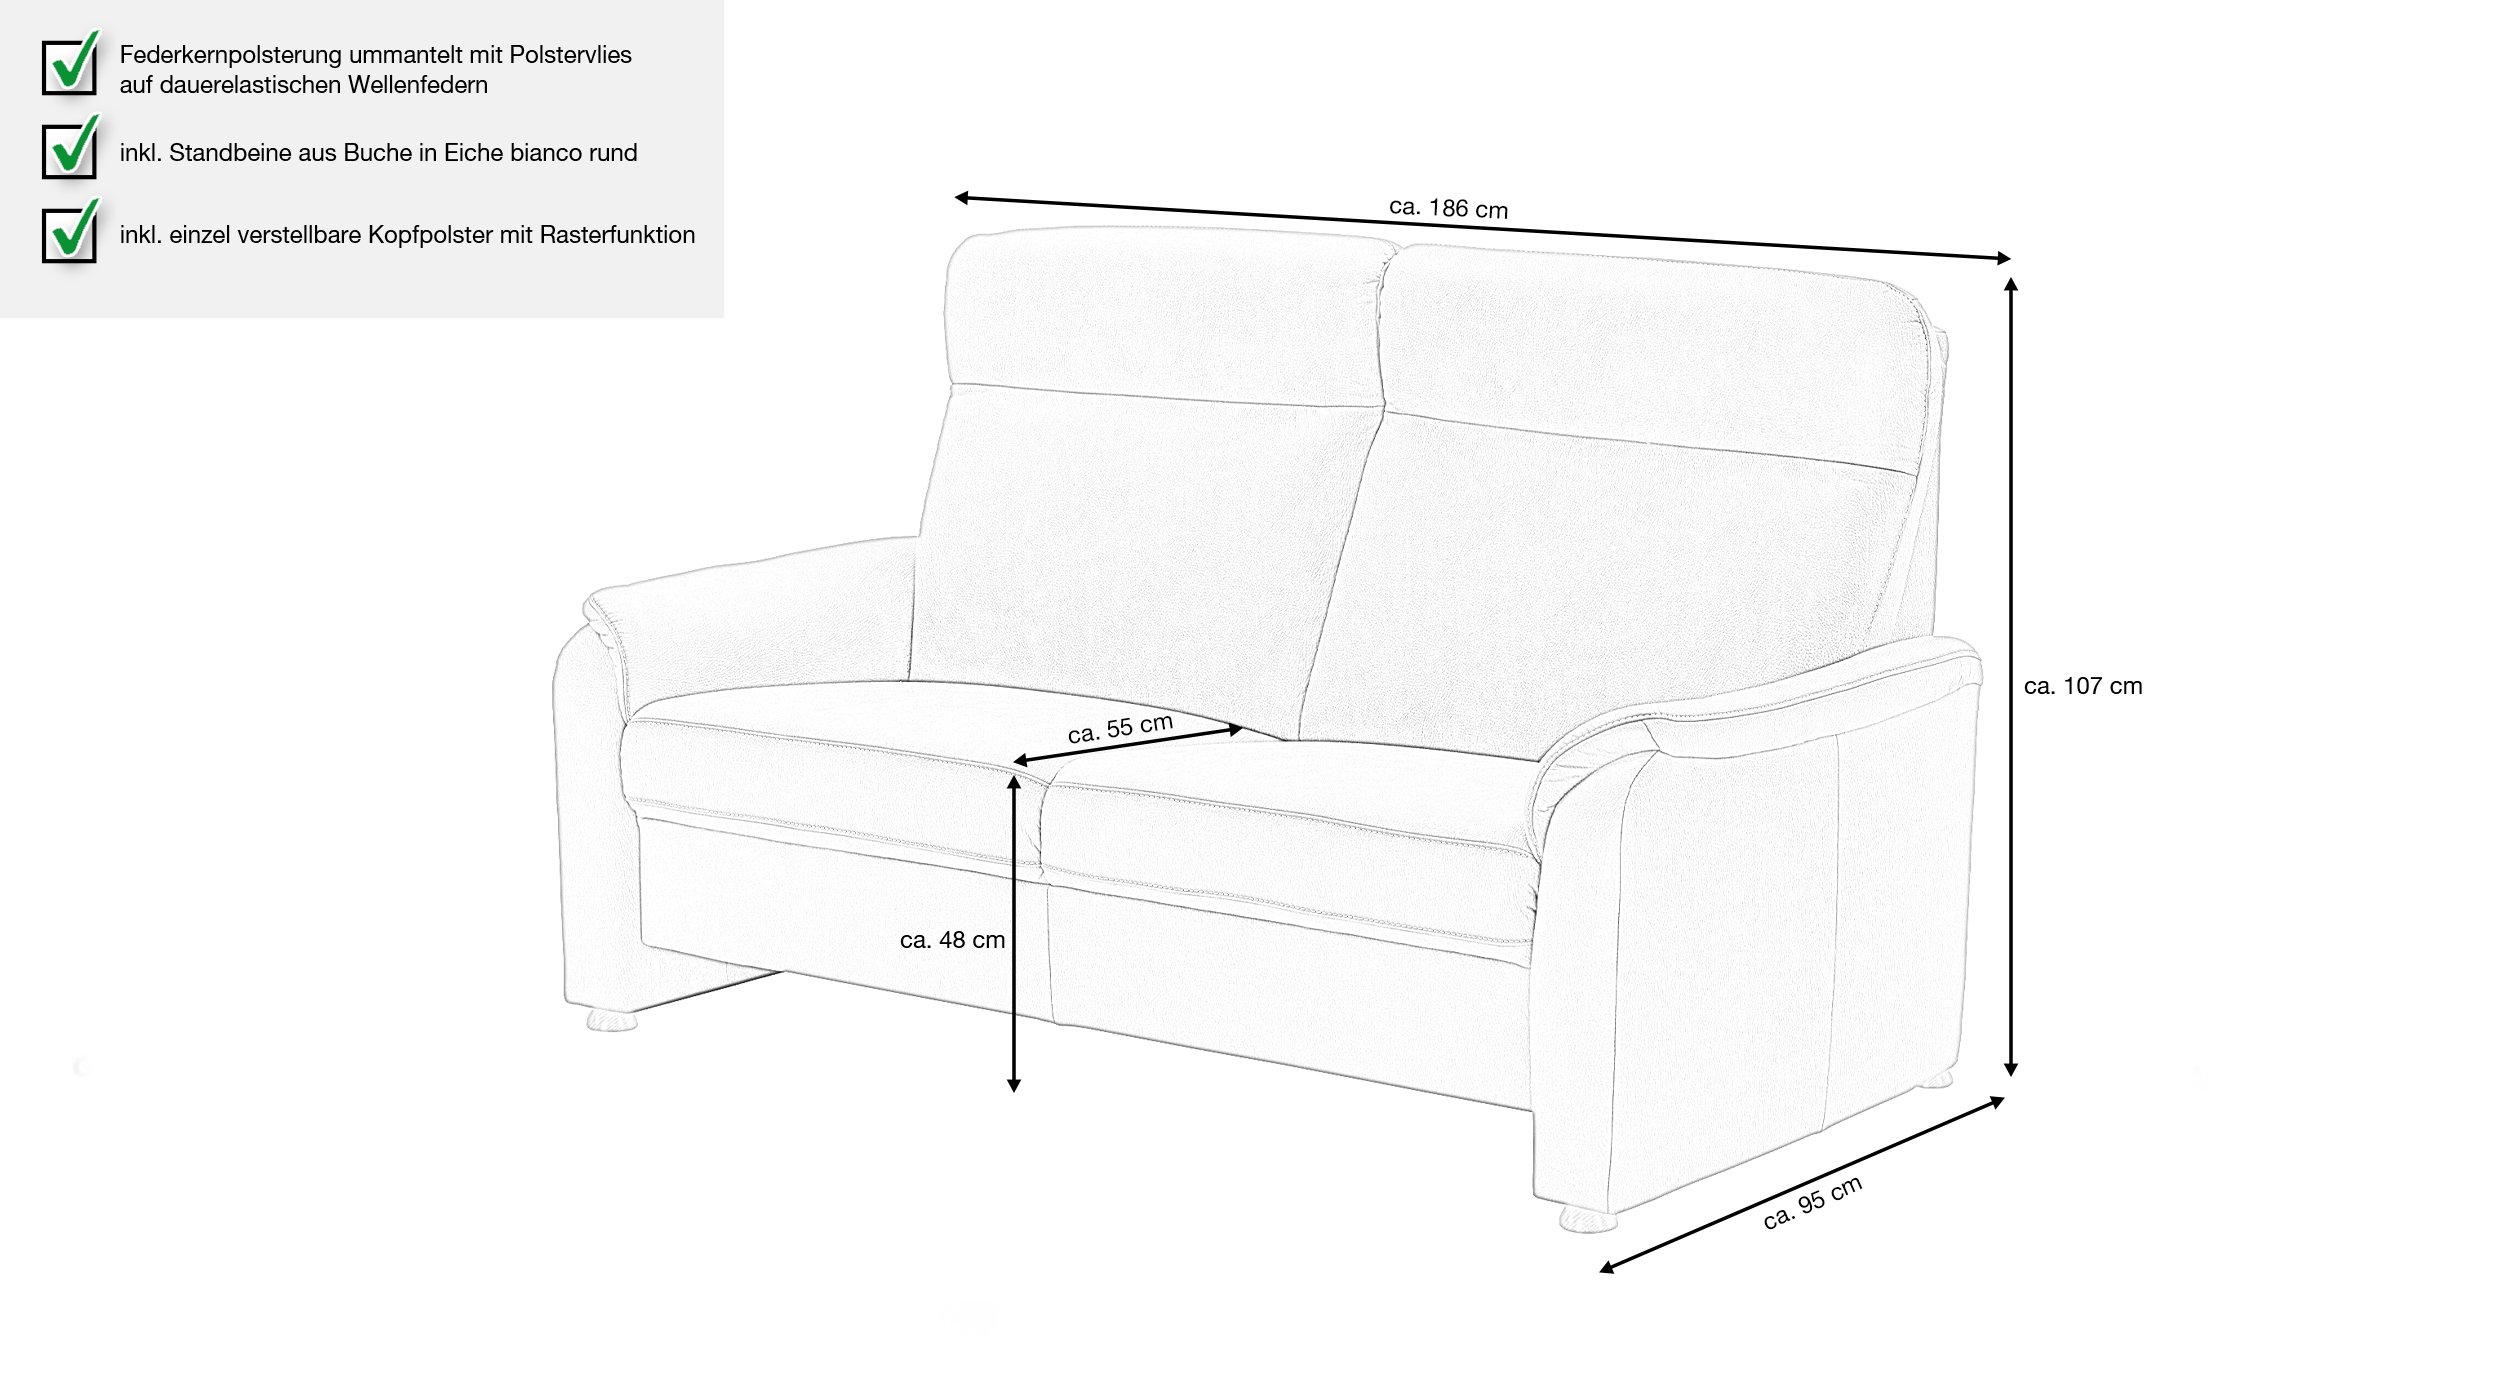 Couchliebe® Einzelsofa 2,5 Sitzer planbar - anthrazit - Basis Version - Penelope